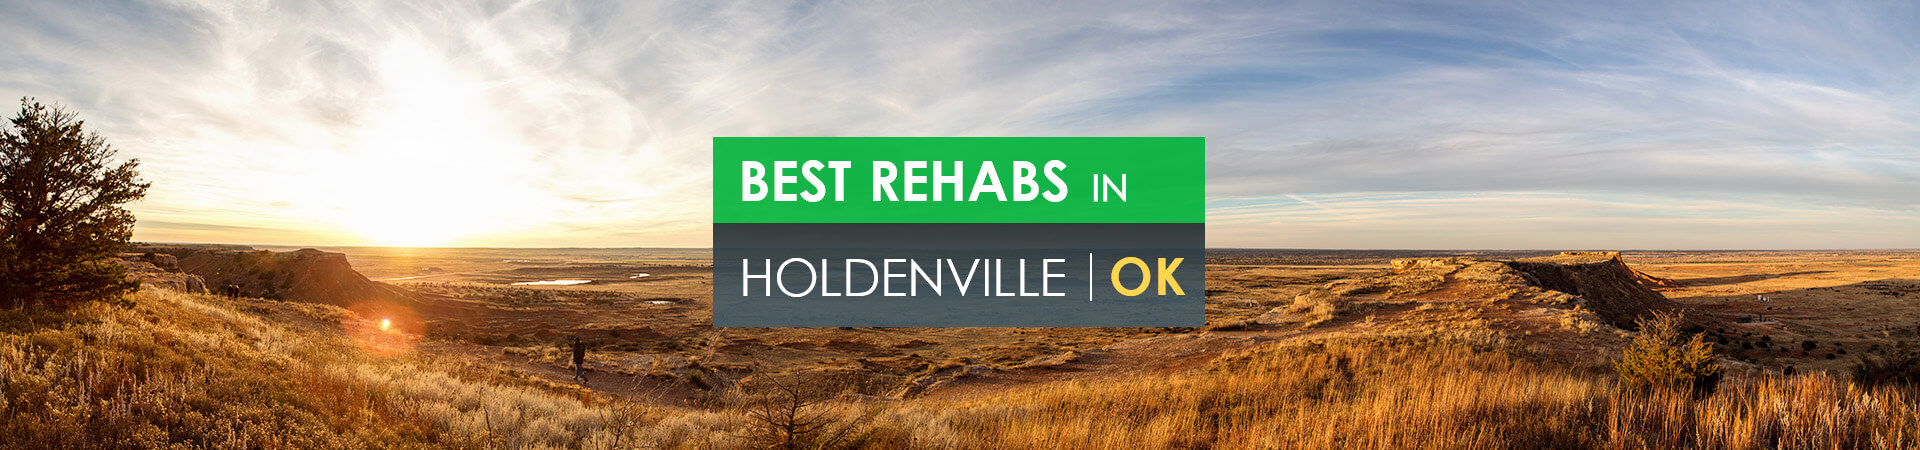 Best rehabs in Holdenville, OK